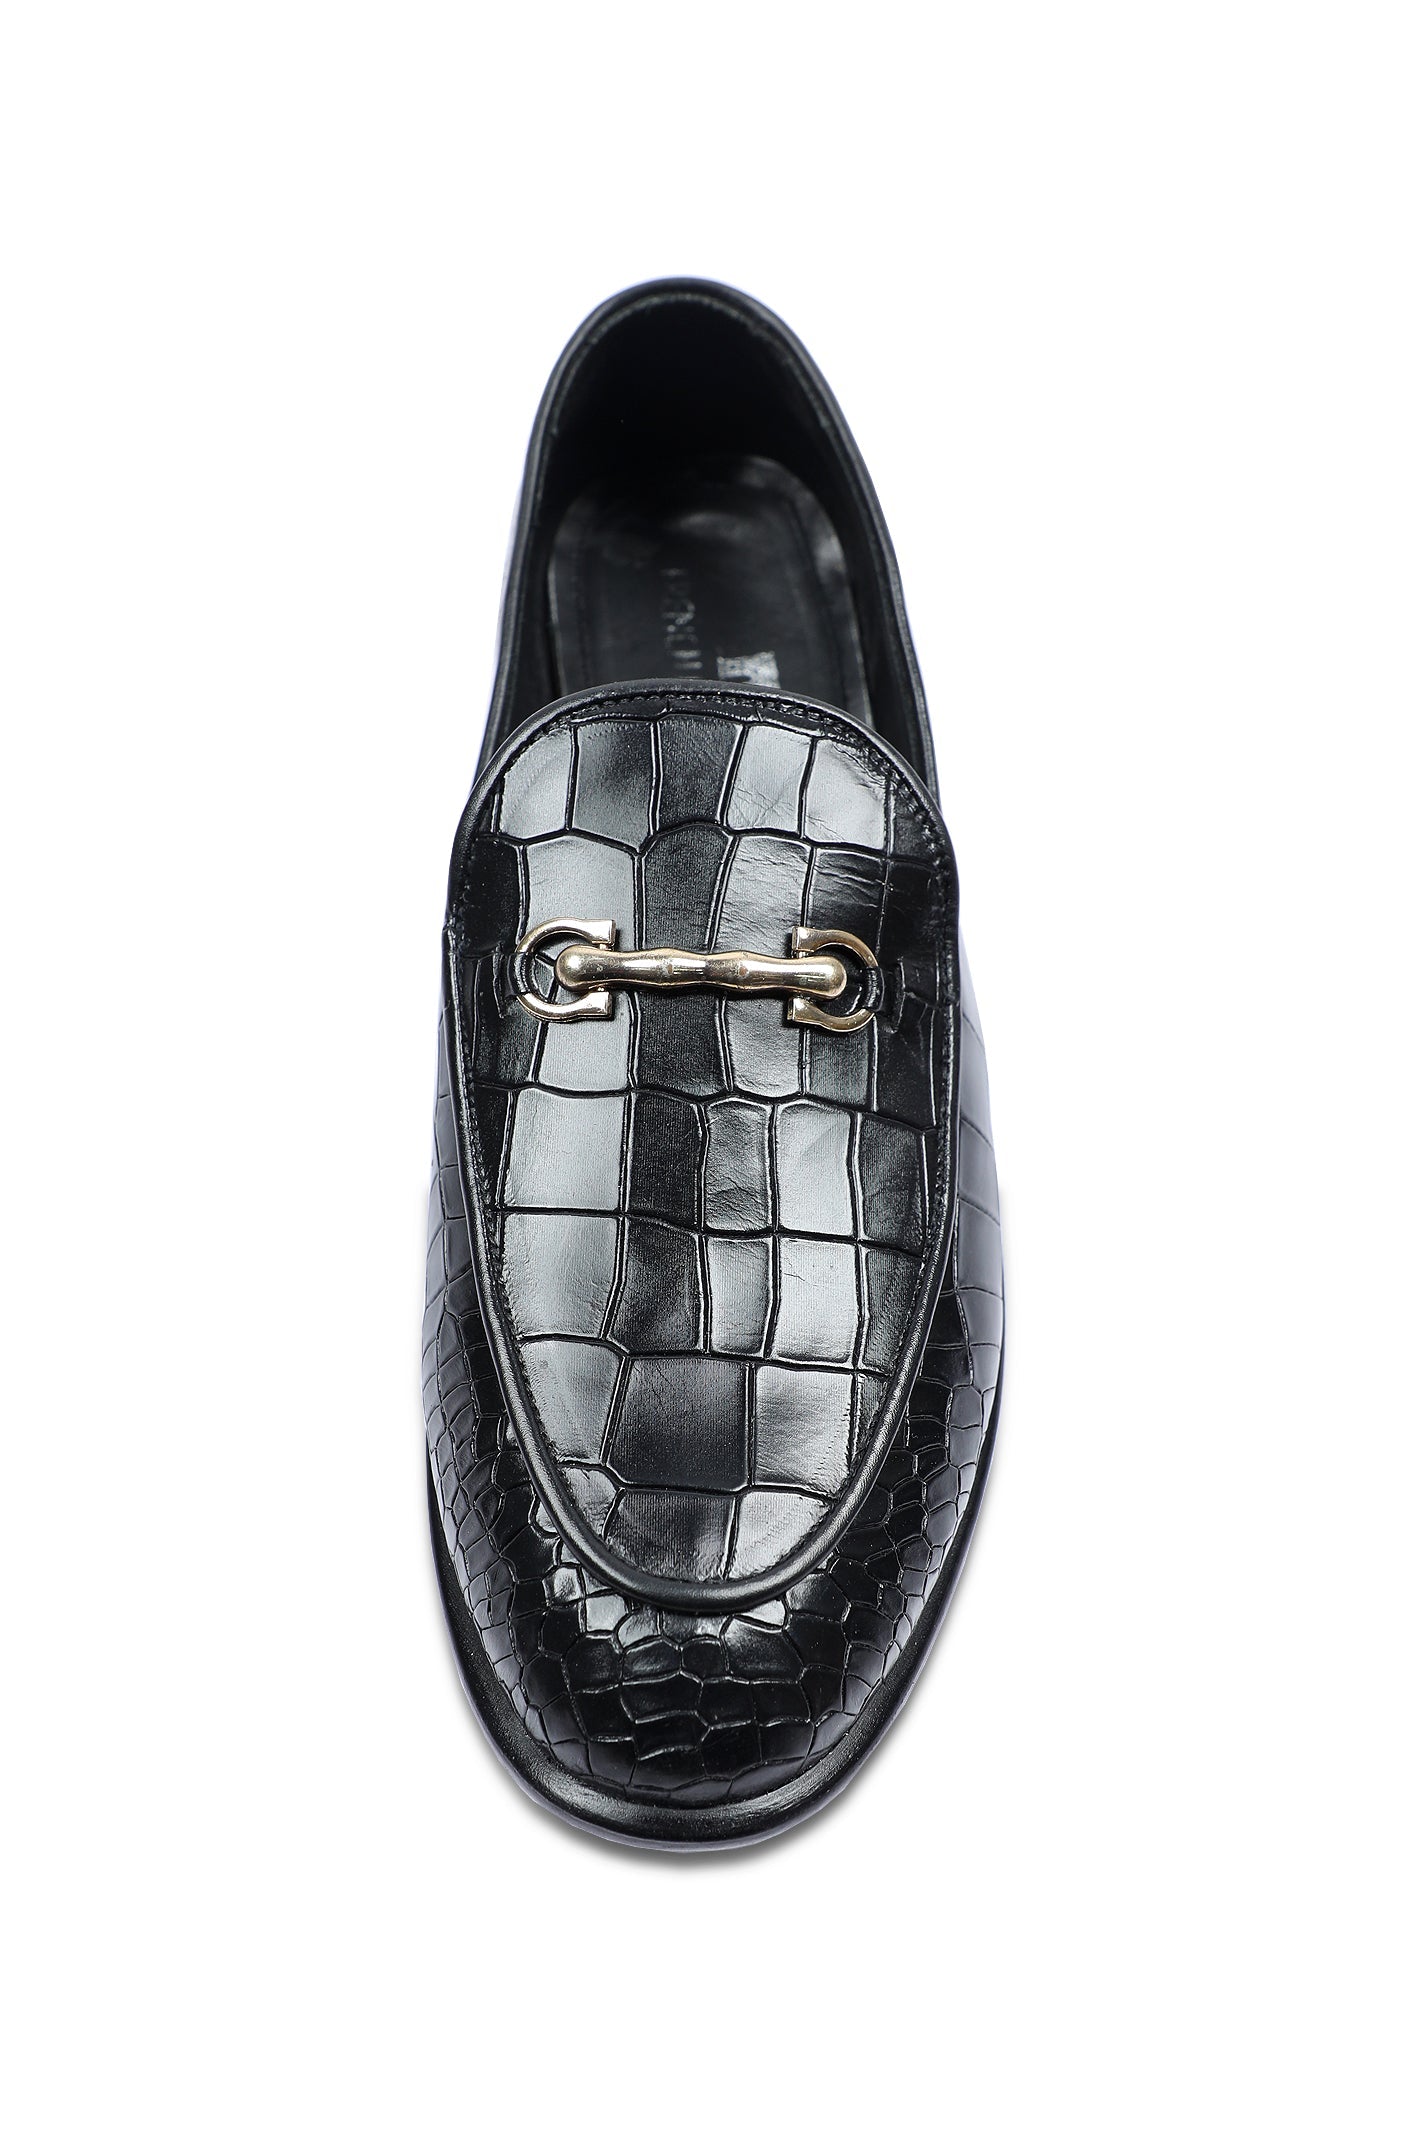 Formal Shoes For Men in Black SKU: SMF-0200-Black - Diners